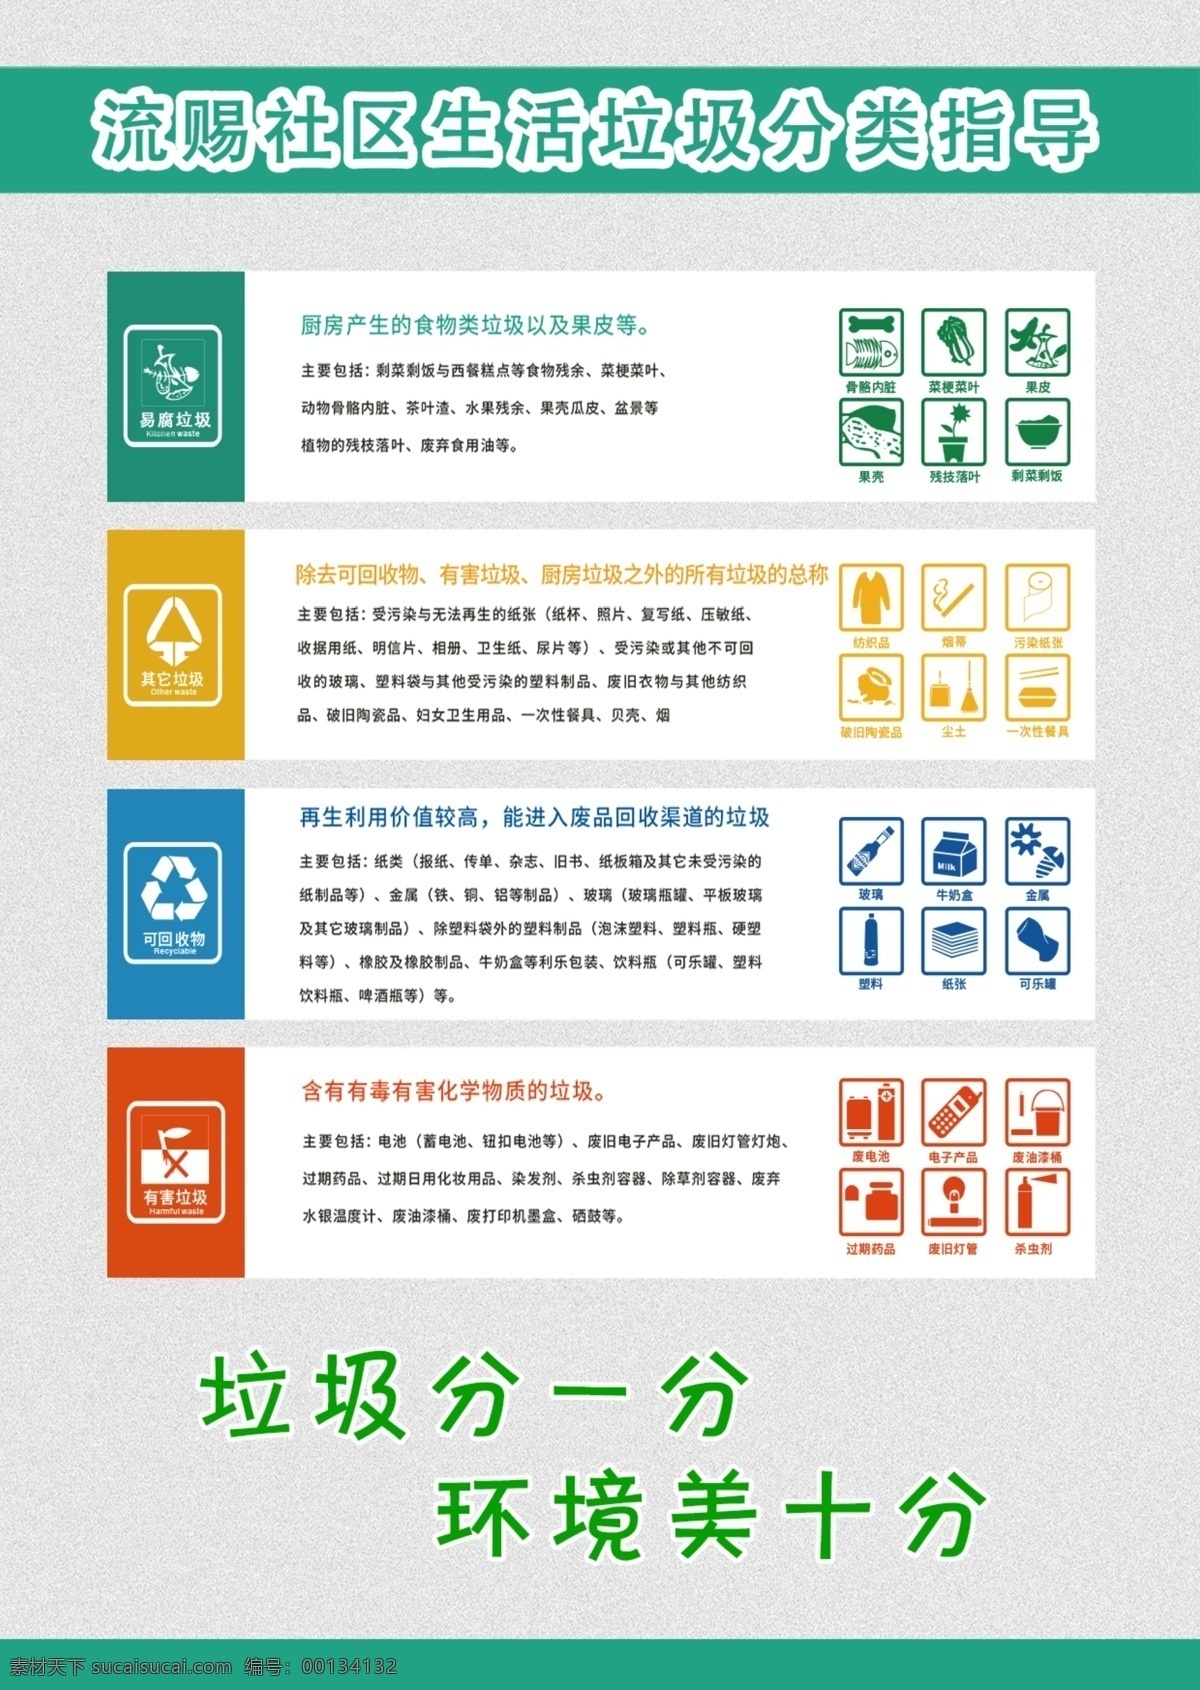 垃圾分类 垃圾 分类 处理 环境 美化 标志图标 公共标识标志